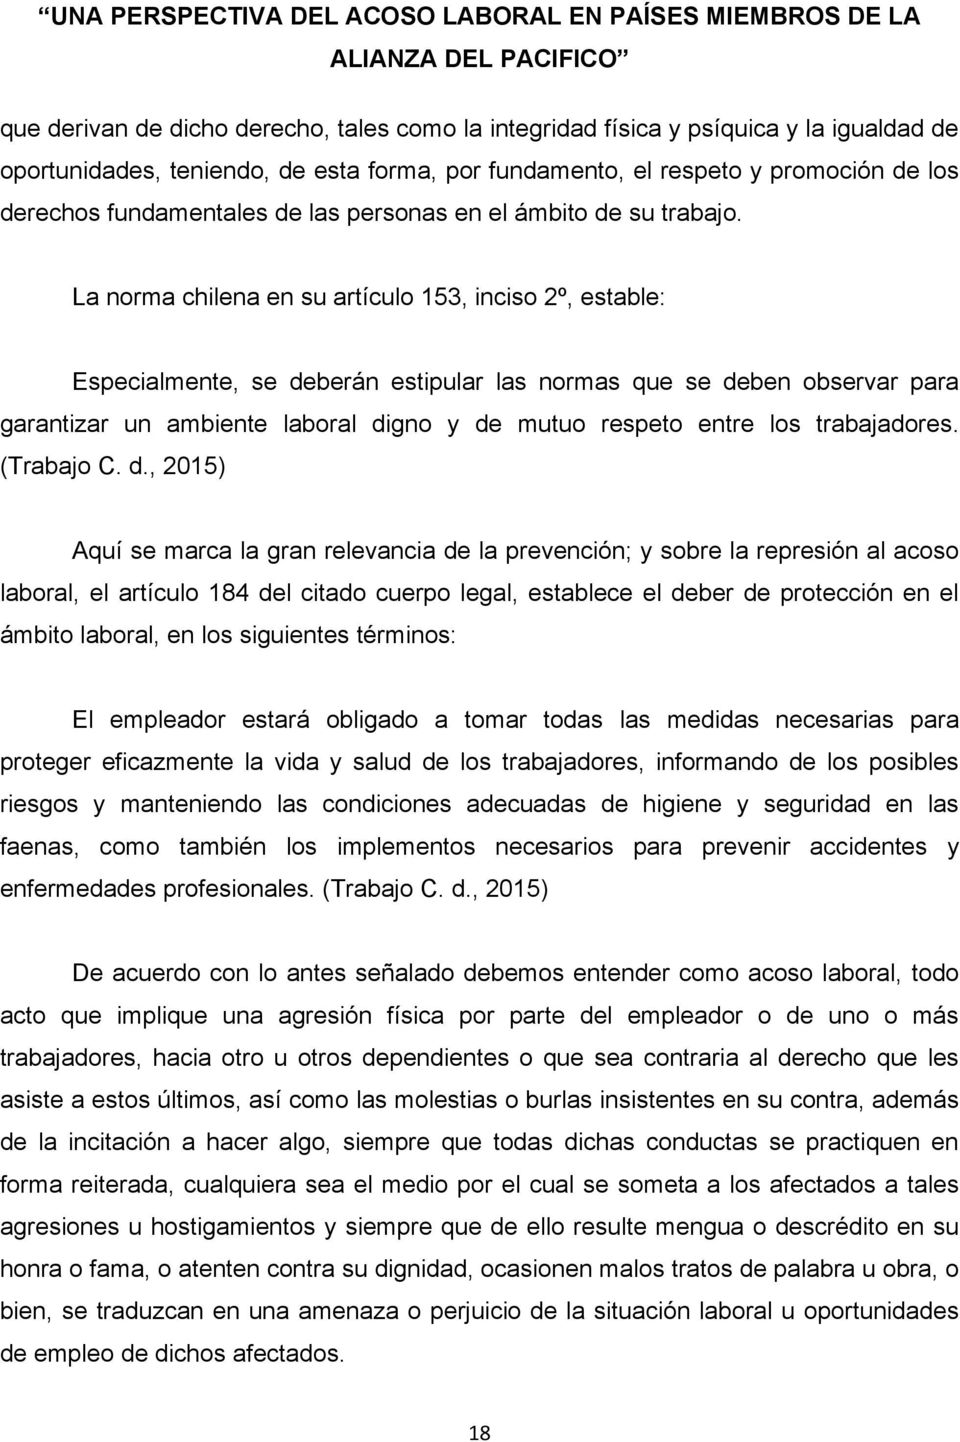 La norma chilena en su artículo 153, inciso 2º, estable: Especialmente, se deberán estipular las normas que se deben observar para garantizar un ambiente laboral digno y de mutuo respeto entre los